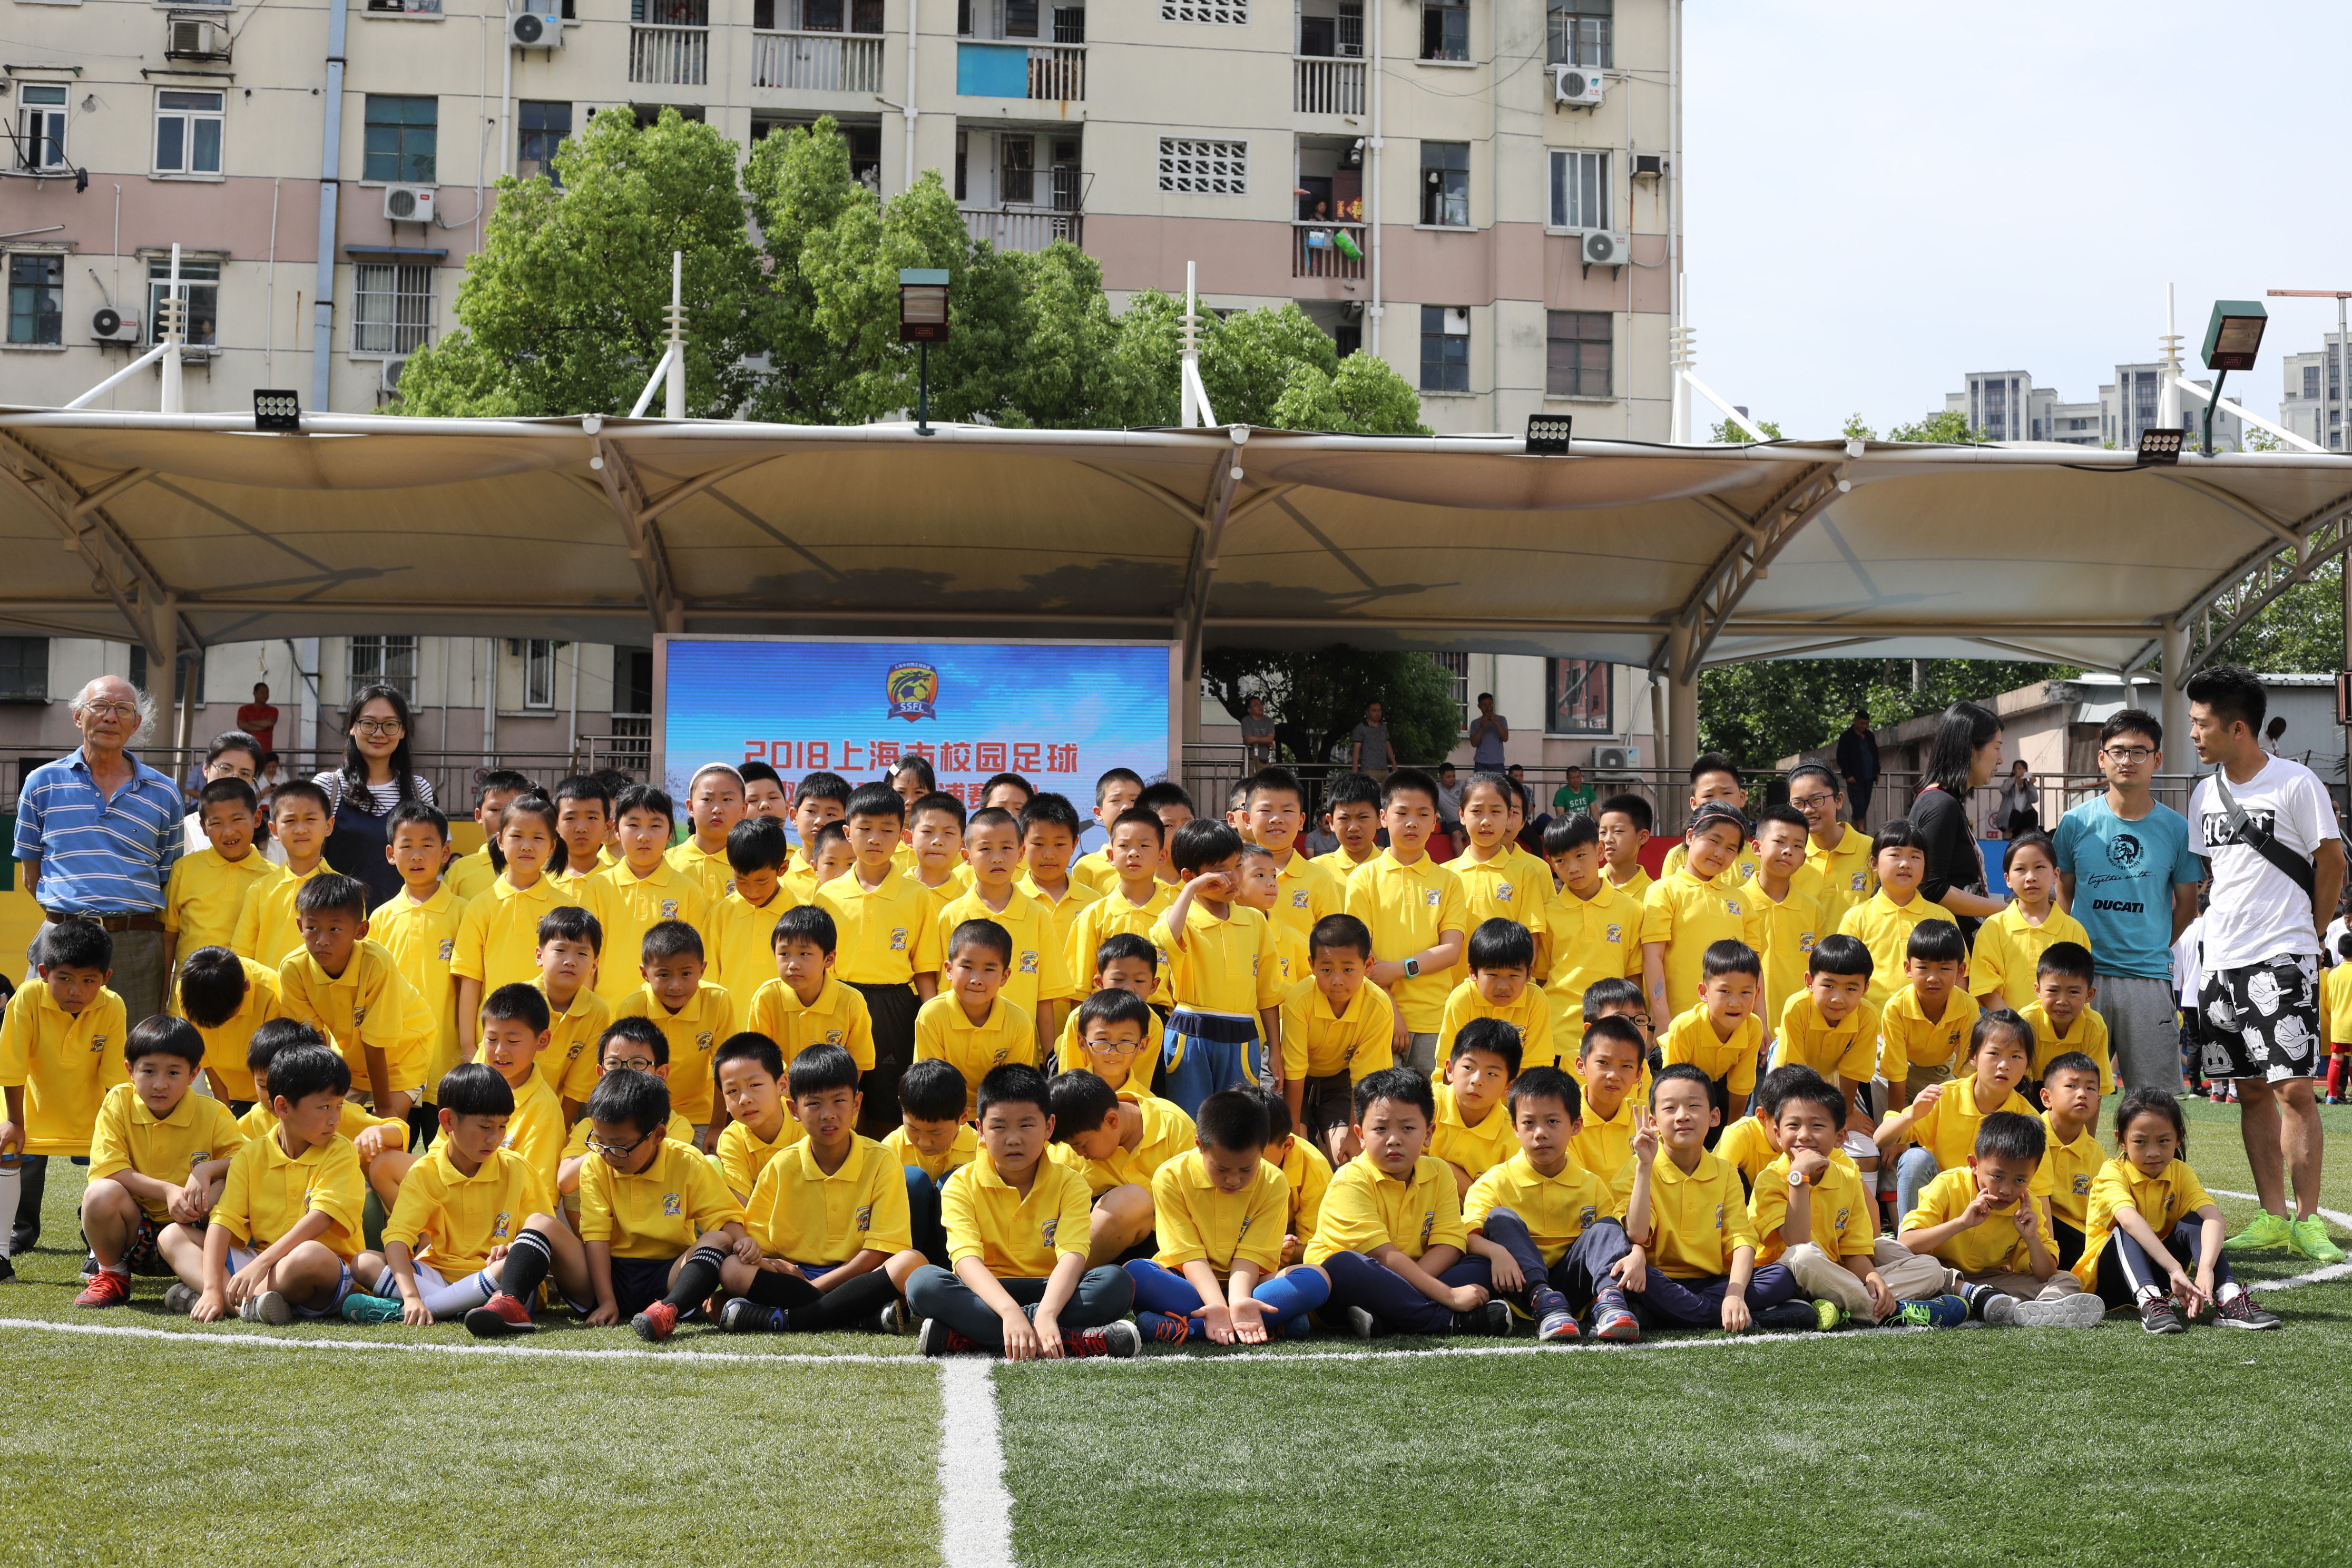 上海市校园足球联盟趣味竞赛举行 近千名学生